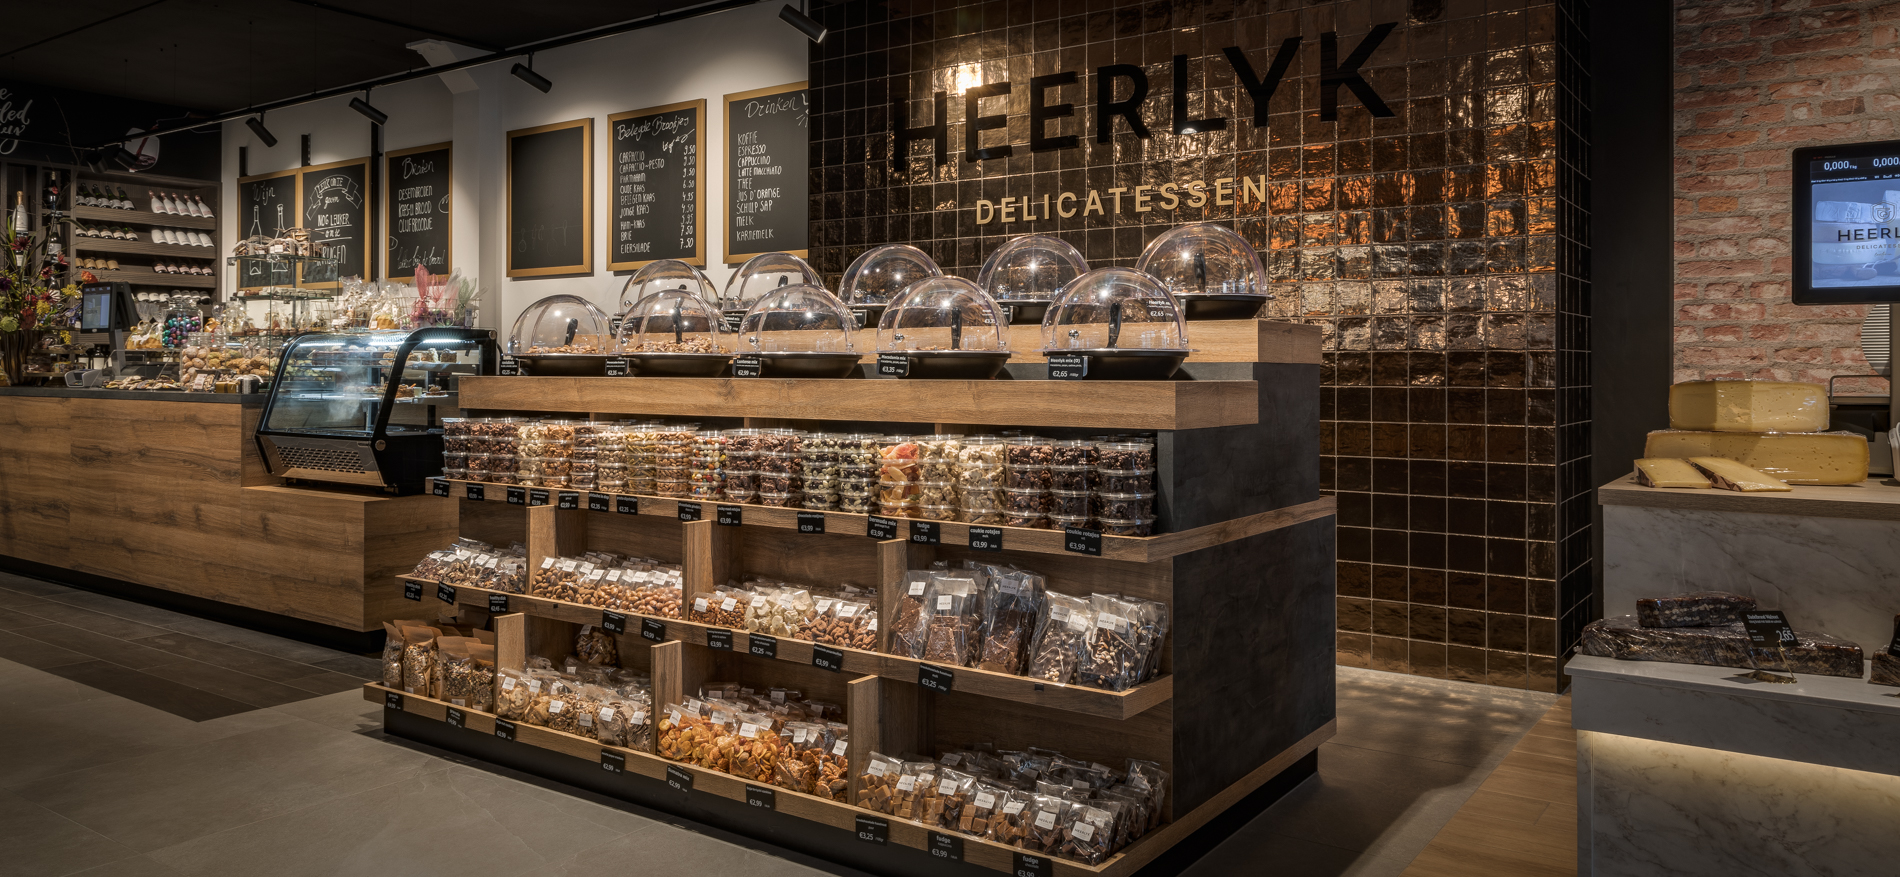 Heerlyk Delicatessen | Lunteren (NL) - Retail design